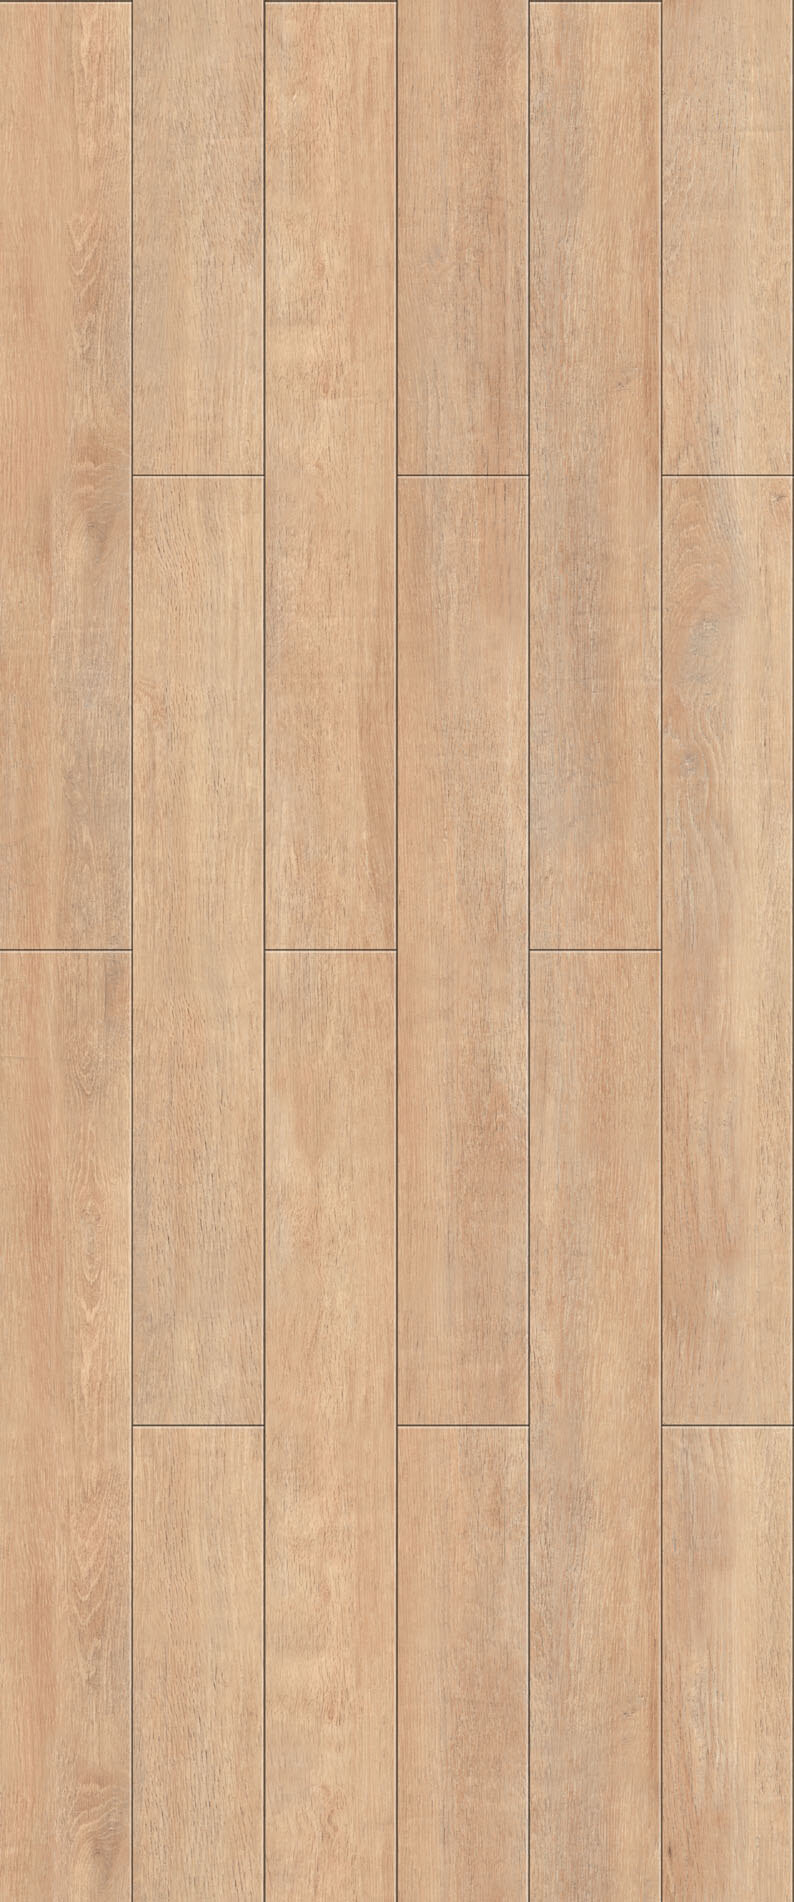 木地板 贴图 装修 效果图 地板贴图 木地板贴图 木地板效果图 木地板材质 地板设计素材 装饰素材 室内装饰用图